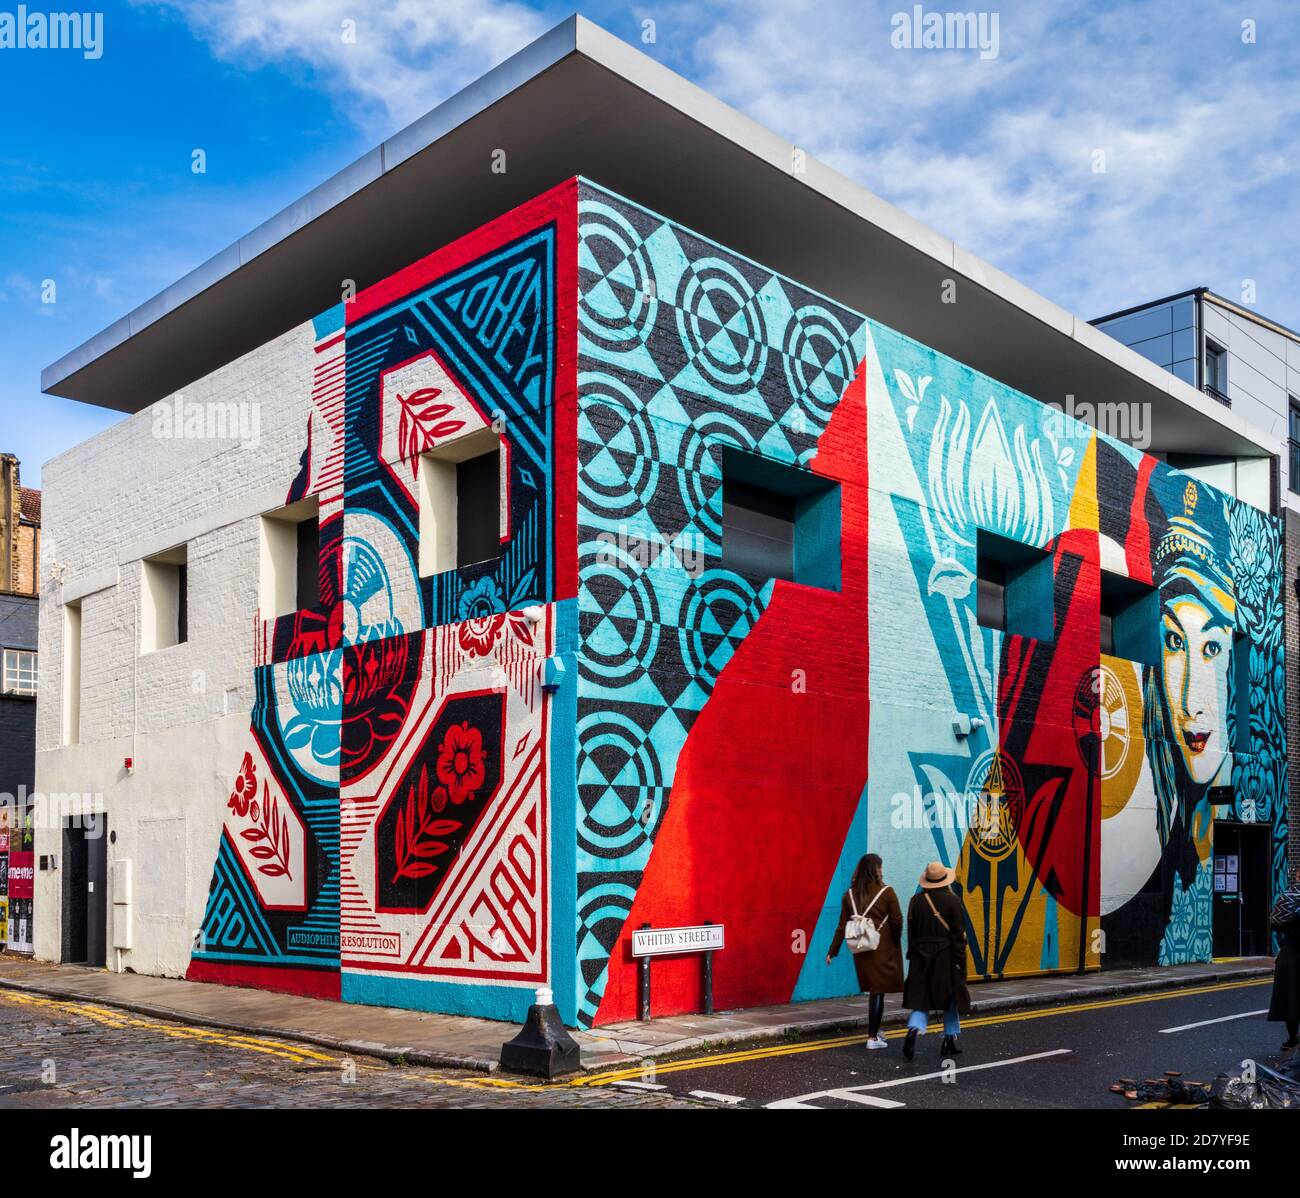 Graffitti schmückt das Dirty House im hippen Londoner Stadtteil Shoreditch. Dirty House Whitby Street Architects David Adjaye Associates. Art Shepard Fairey. Stockfoto